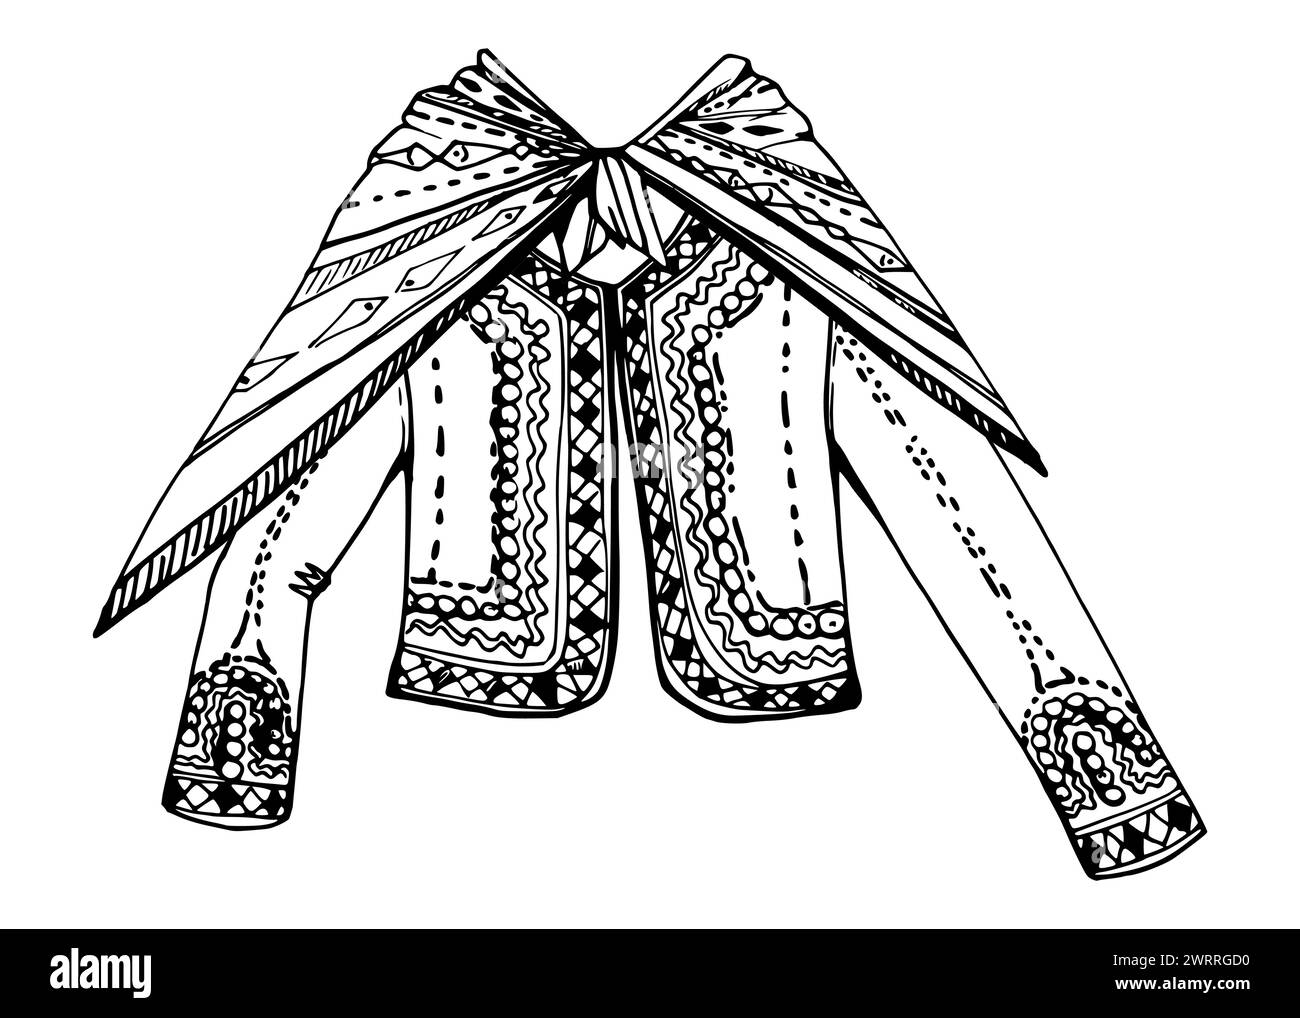 Illustration vectorielle d'encre dessinée à la main, vêtements indiens nationaux brodés culture de la mode Amérique centrale du Sud. Composition isolée sur blanc Illustration de Vecteur